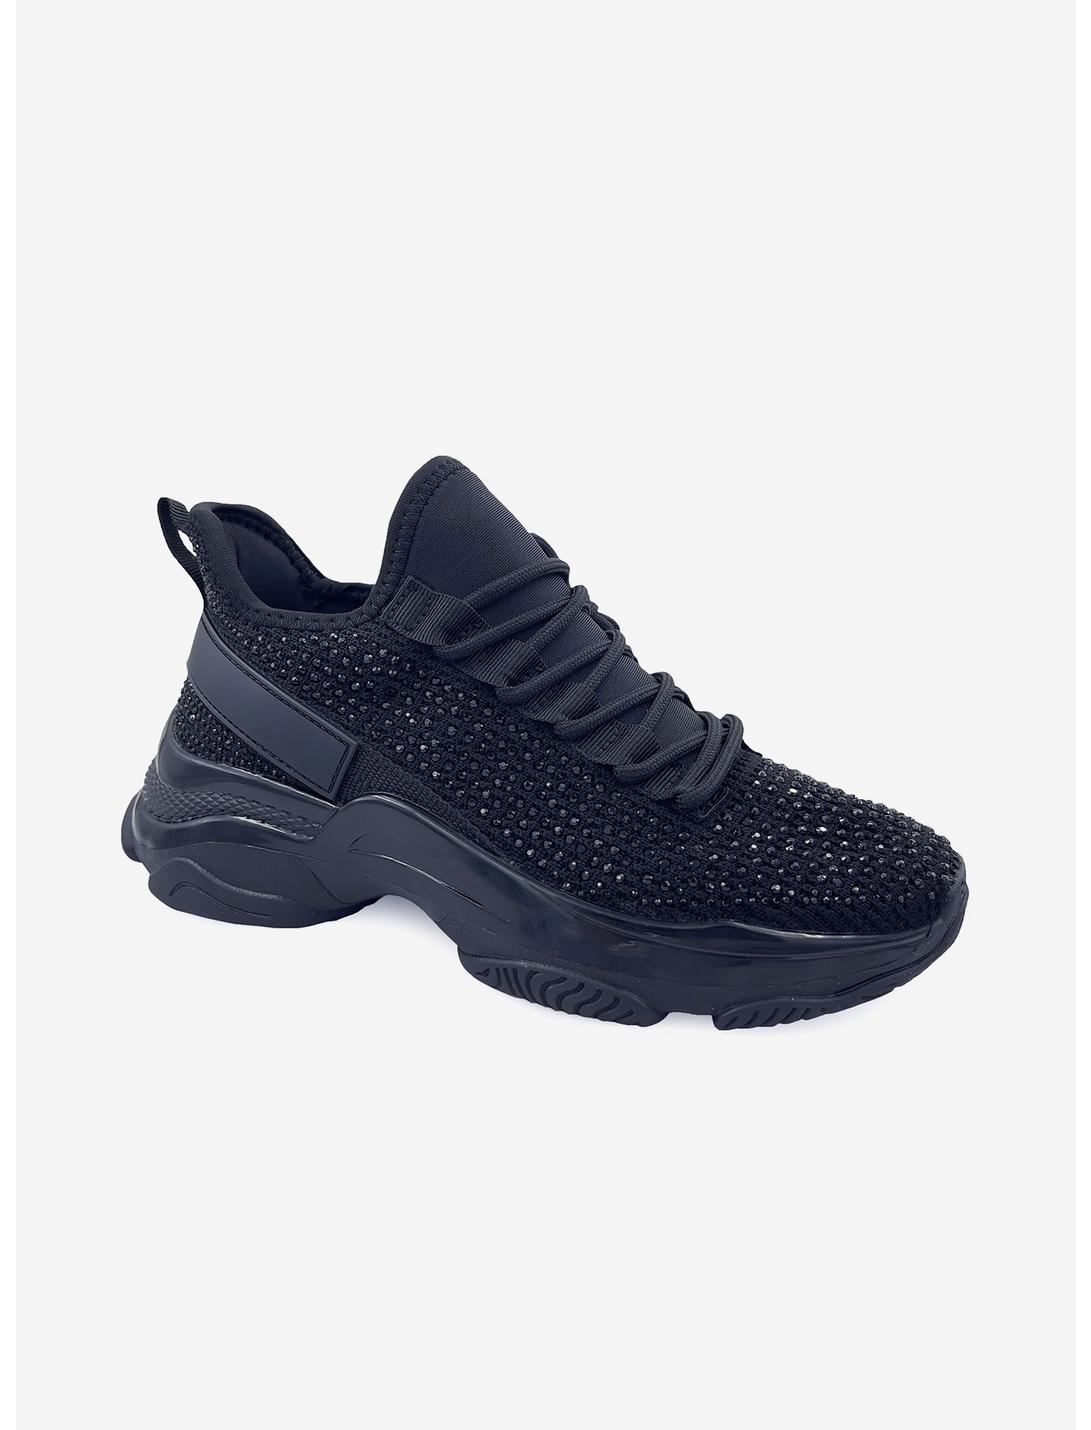 Freya Sparkle Platform Sneaker Black, BLACK, hi-res